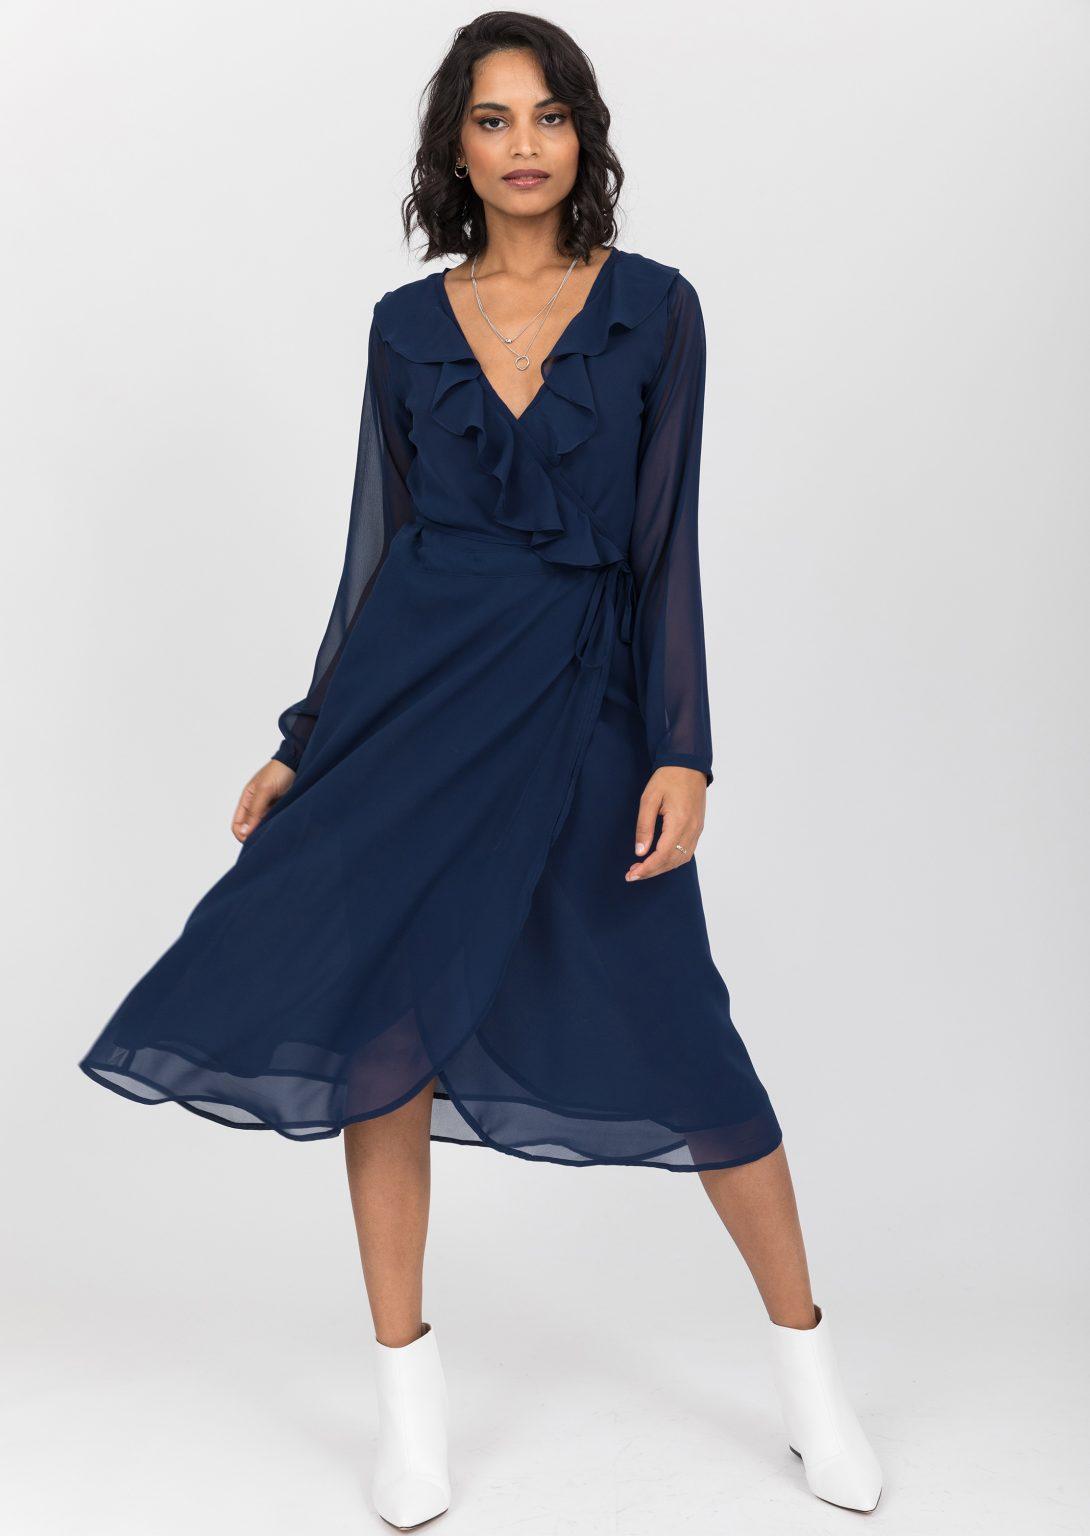 Navy Blue Sheer Midi Wrap Dress With Long Sleeves – likemary